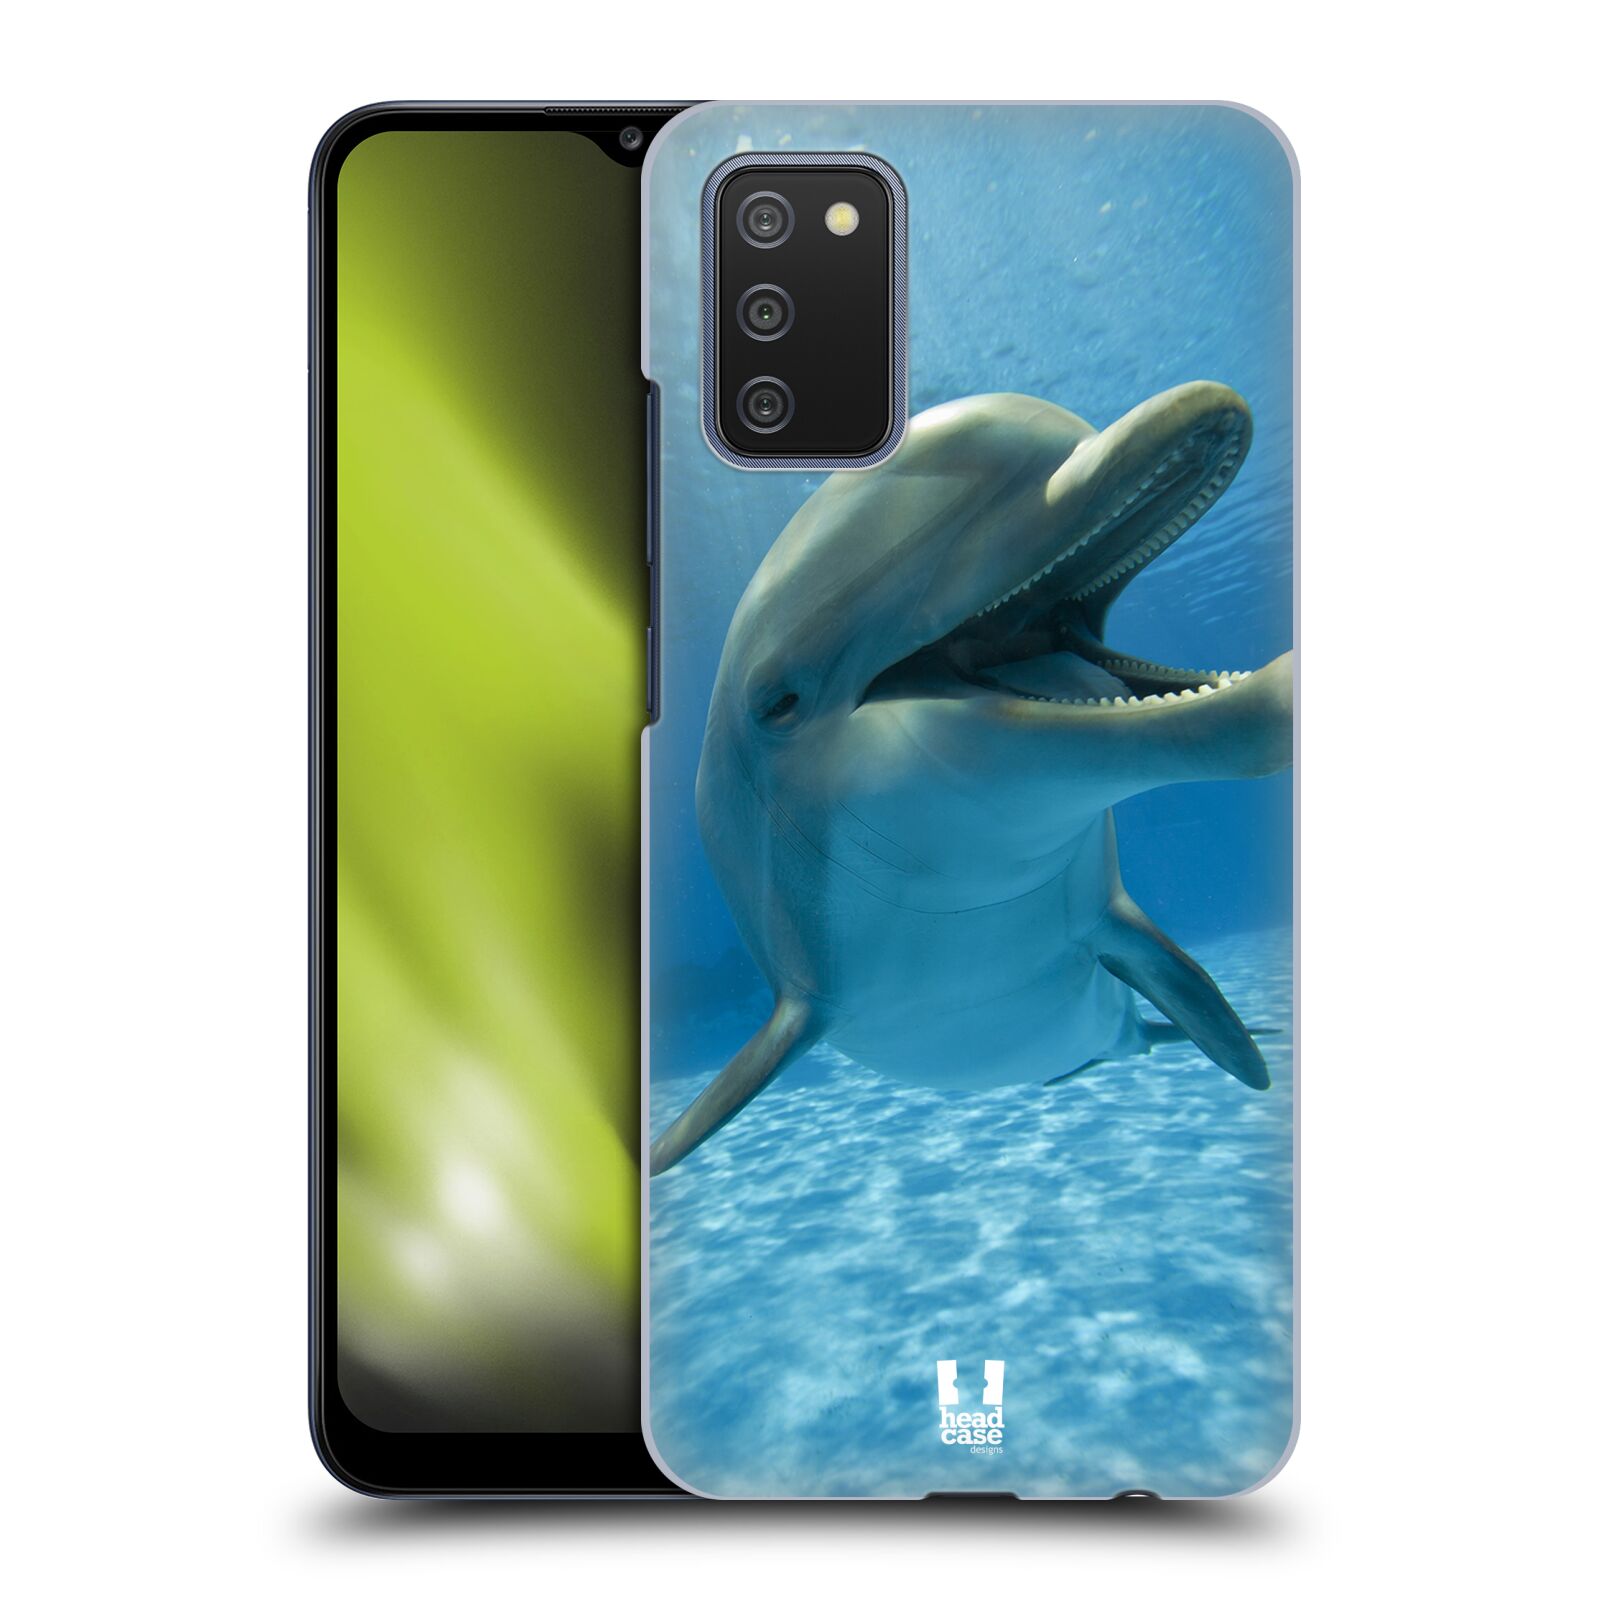 Zadní obal pro mobil Samsung Galaxy A02s - HEAD CASE - Svět zvířat delfín v moři